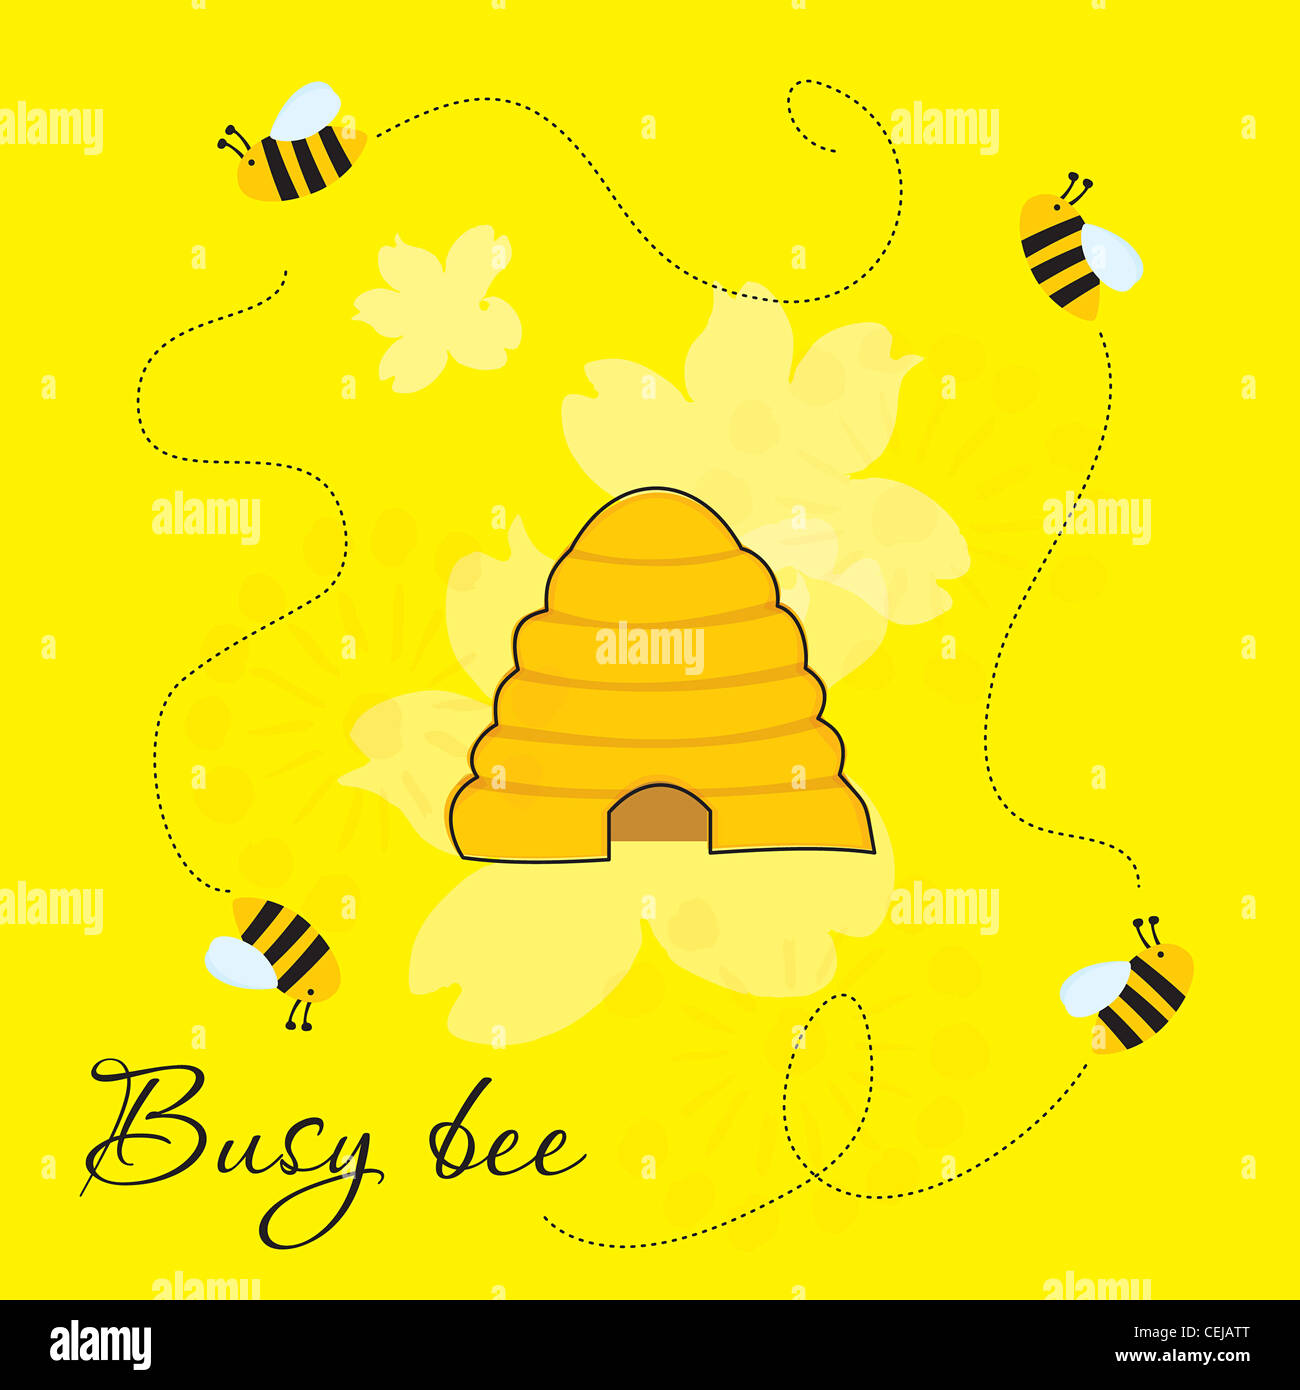 Cute cartoon illustration de les abeilles autour de beehive Banque D'Images